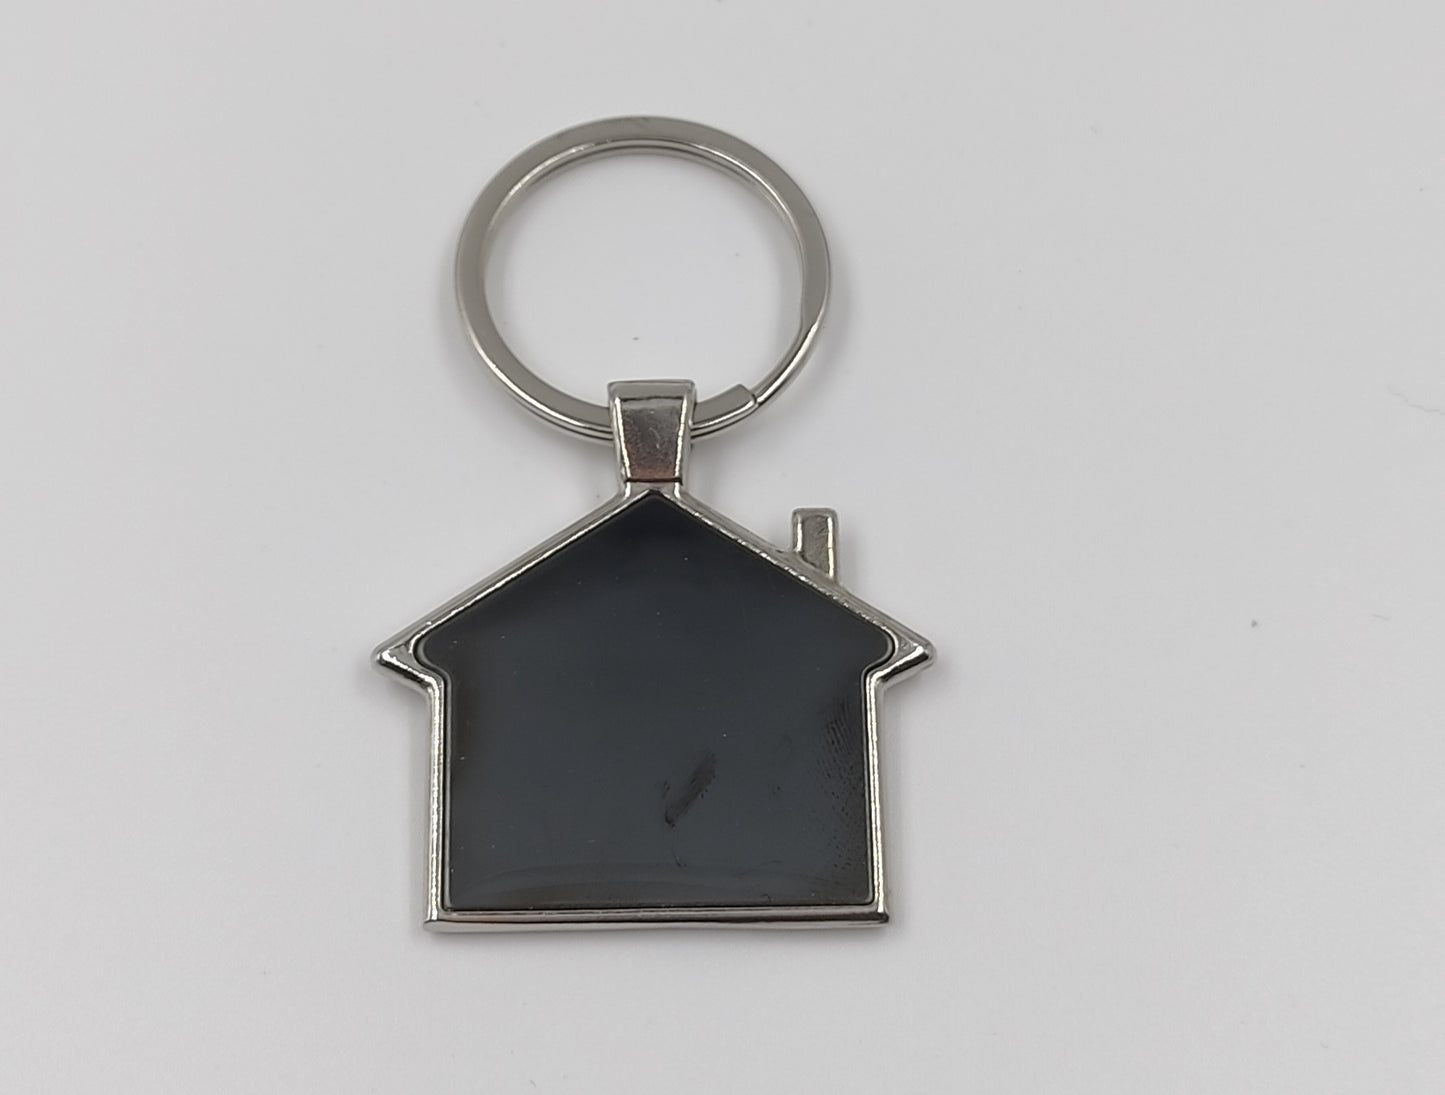 Hut shape metal keychain in Black finish (Double side laser)